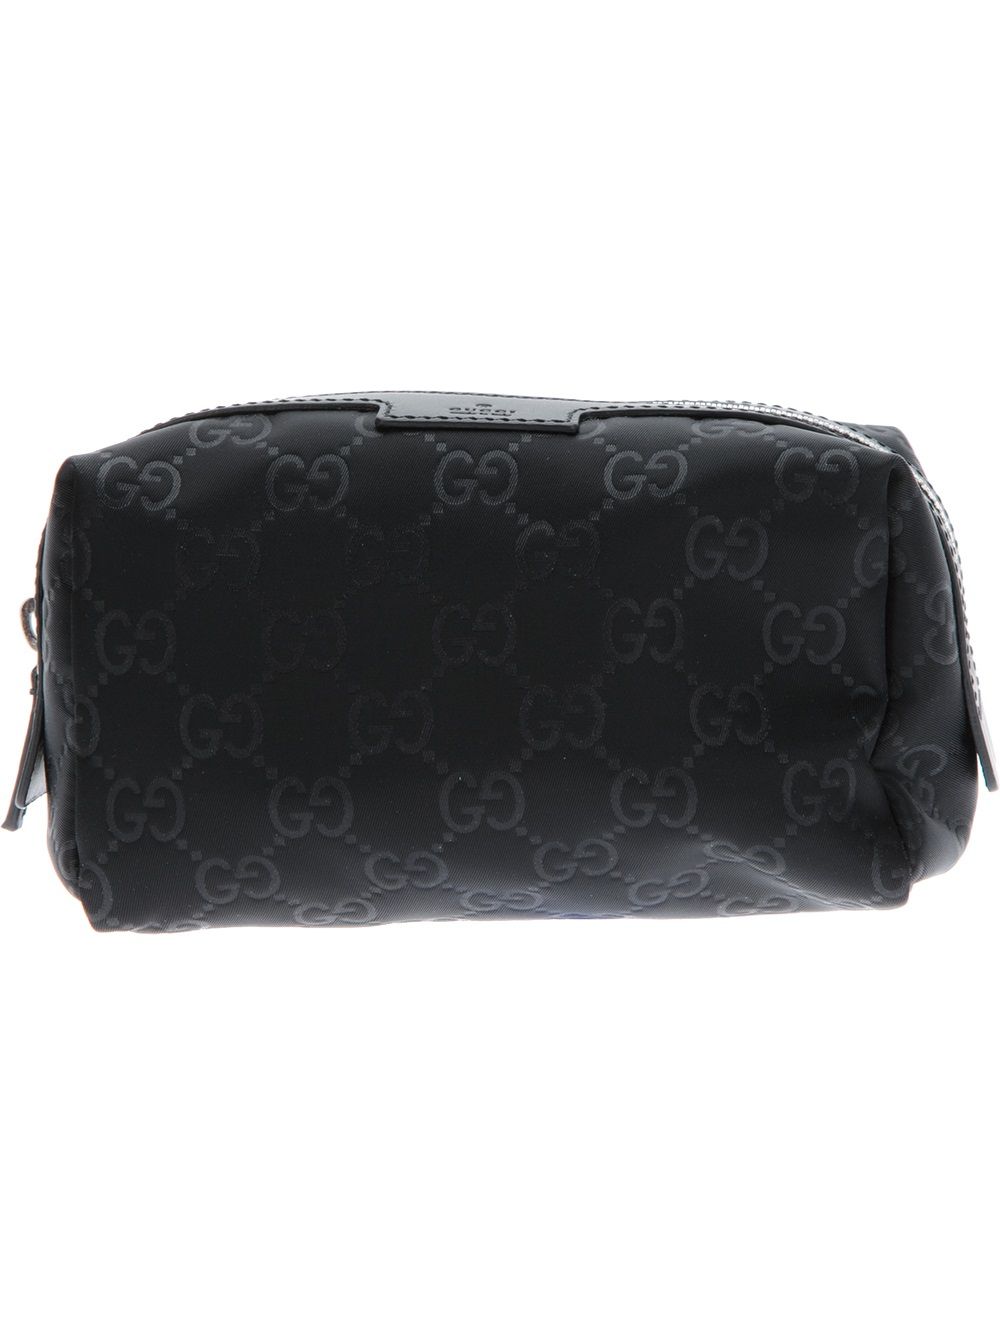 Gucci Monogram Wash Bag in Black for Men - Lyst